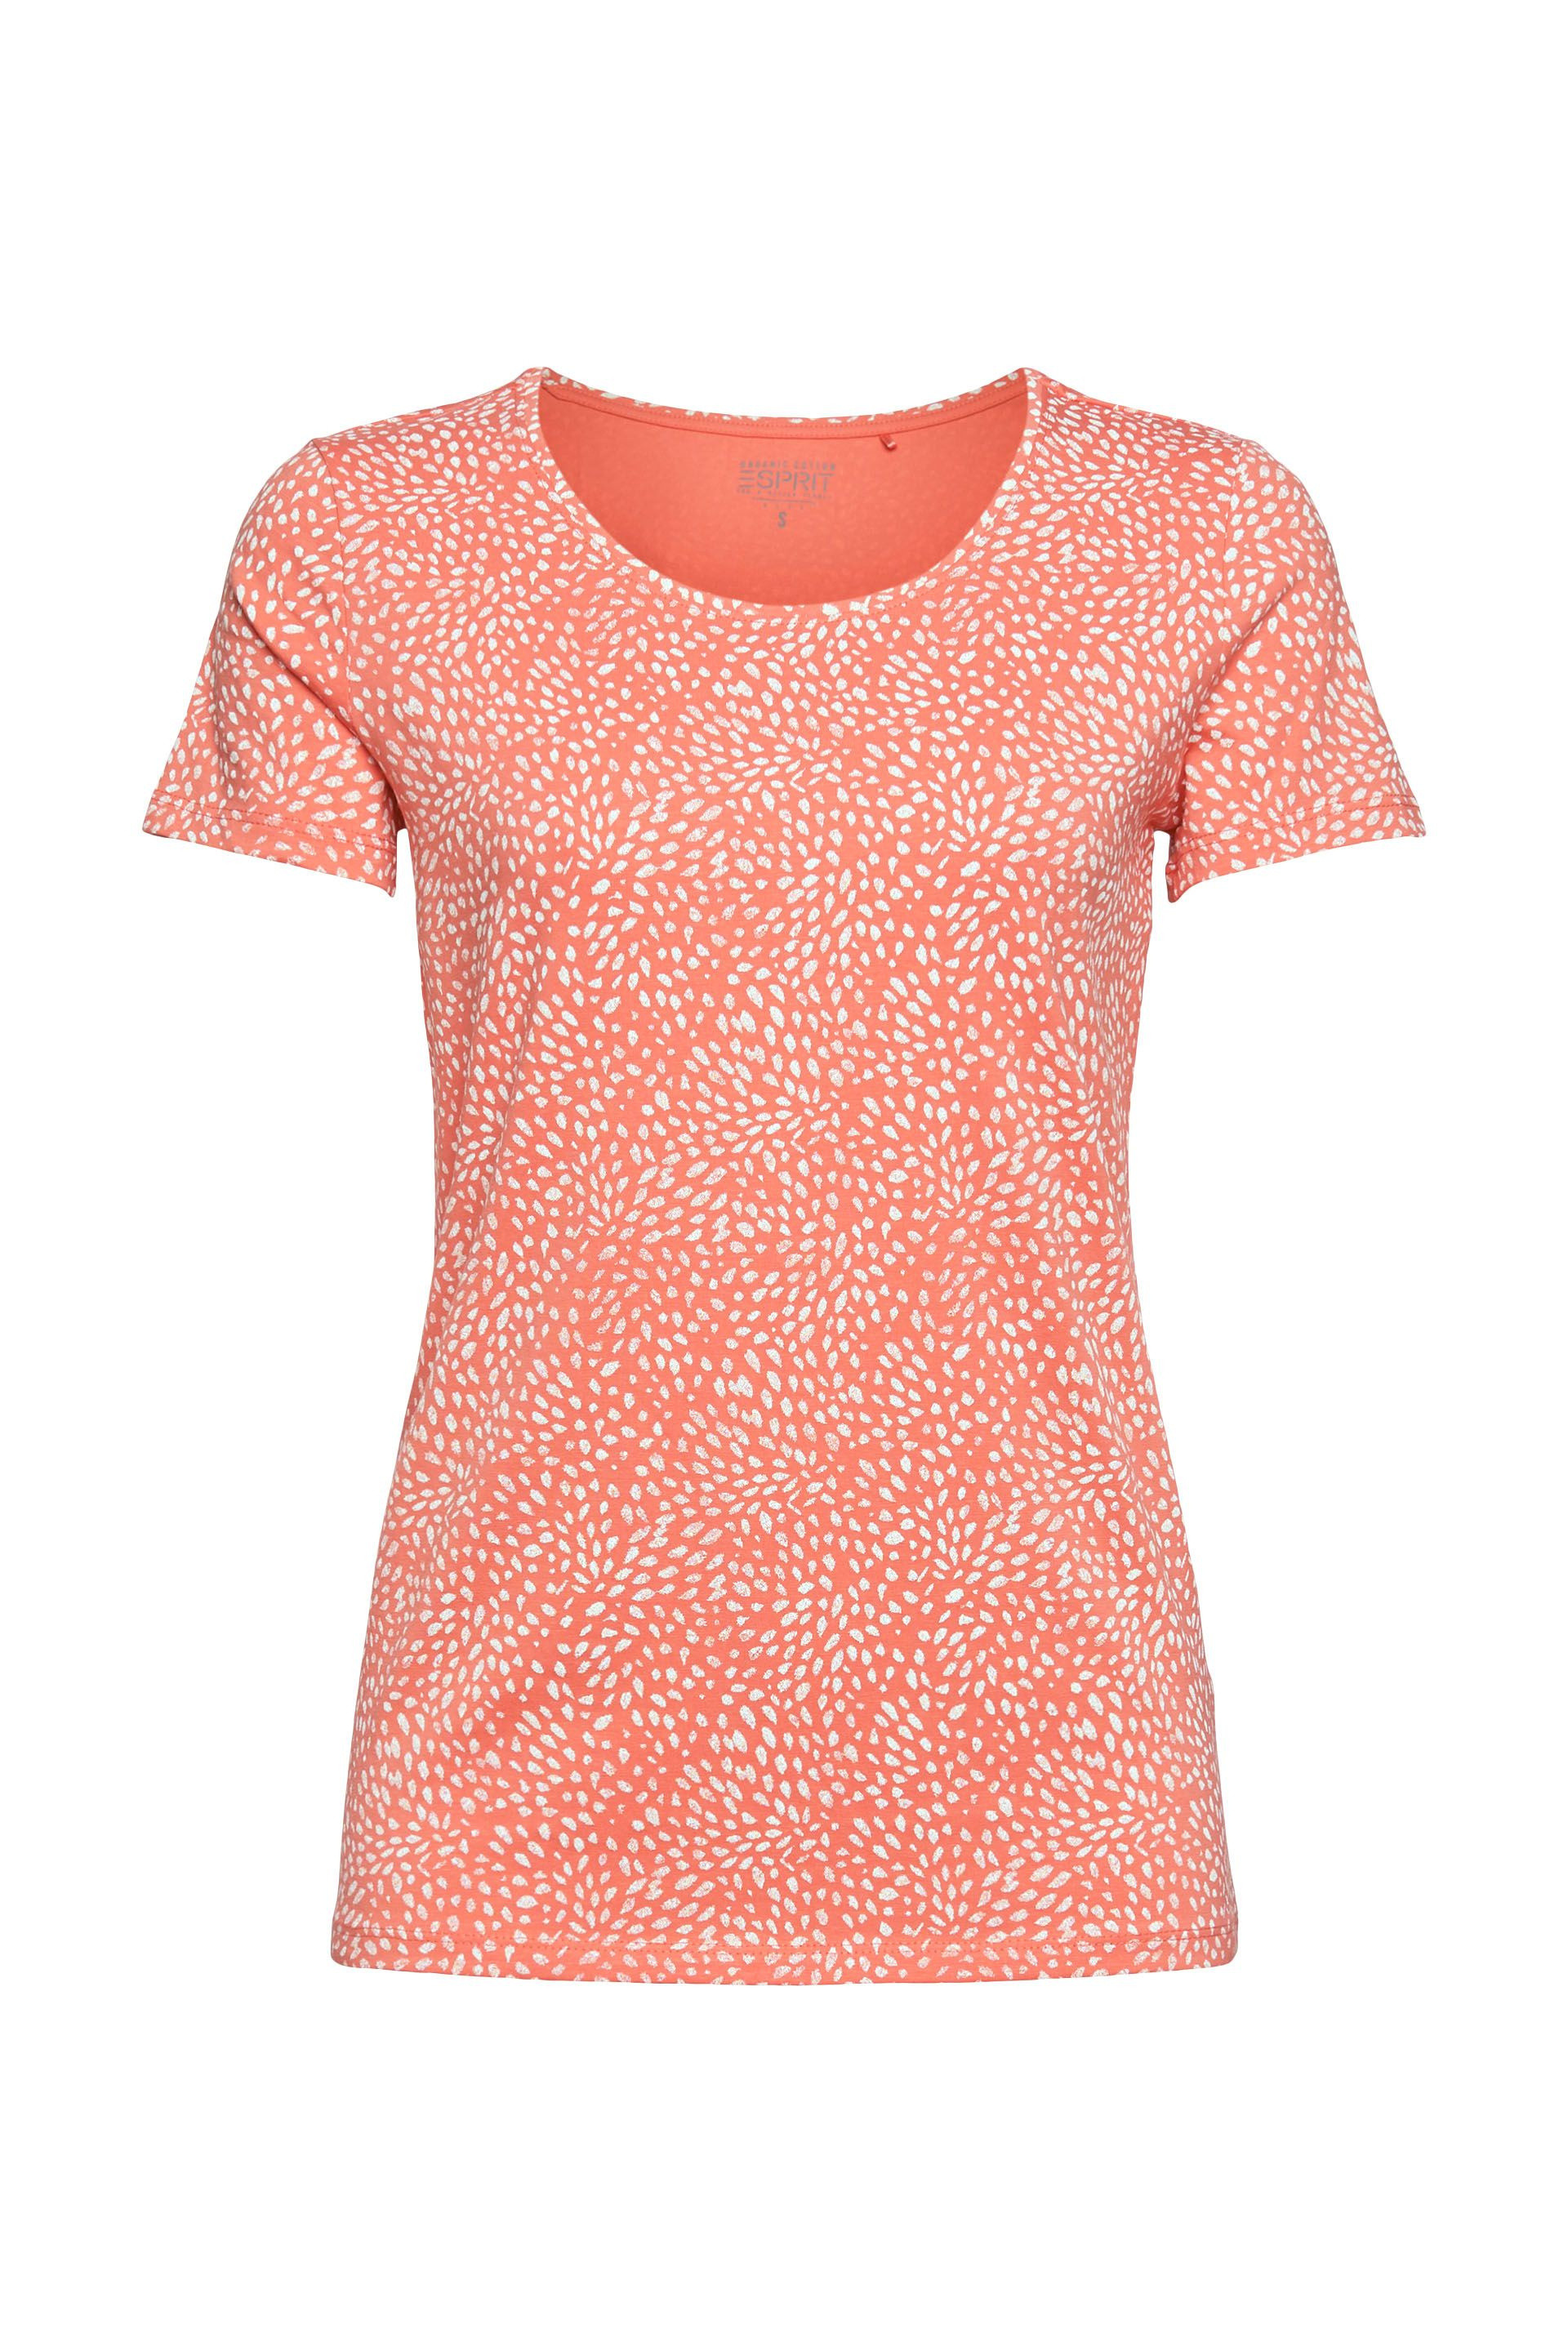 T-shirt in cotone biologico, Rosso corallo, large